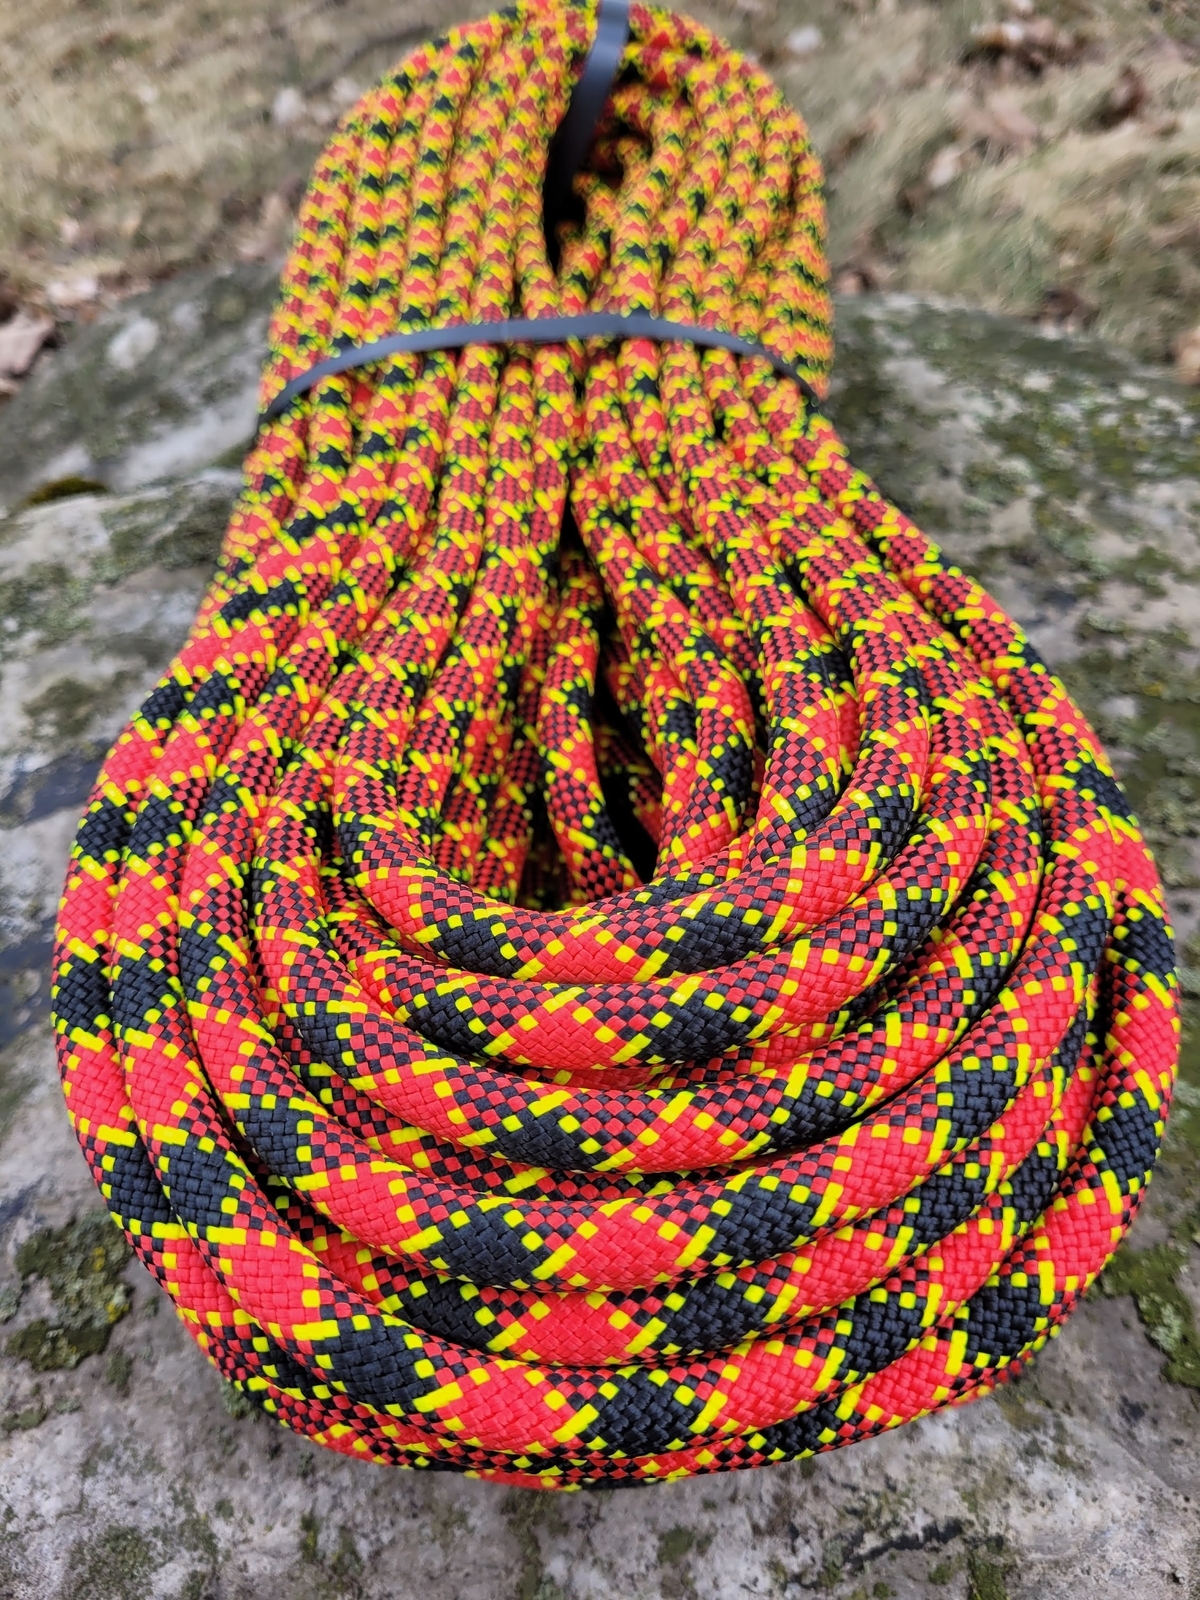 Maxim Ropes